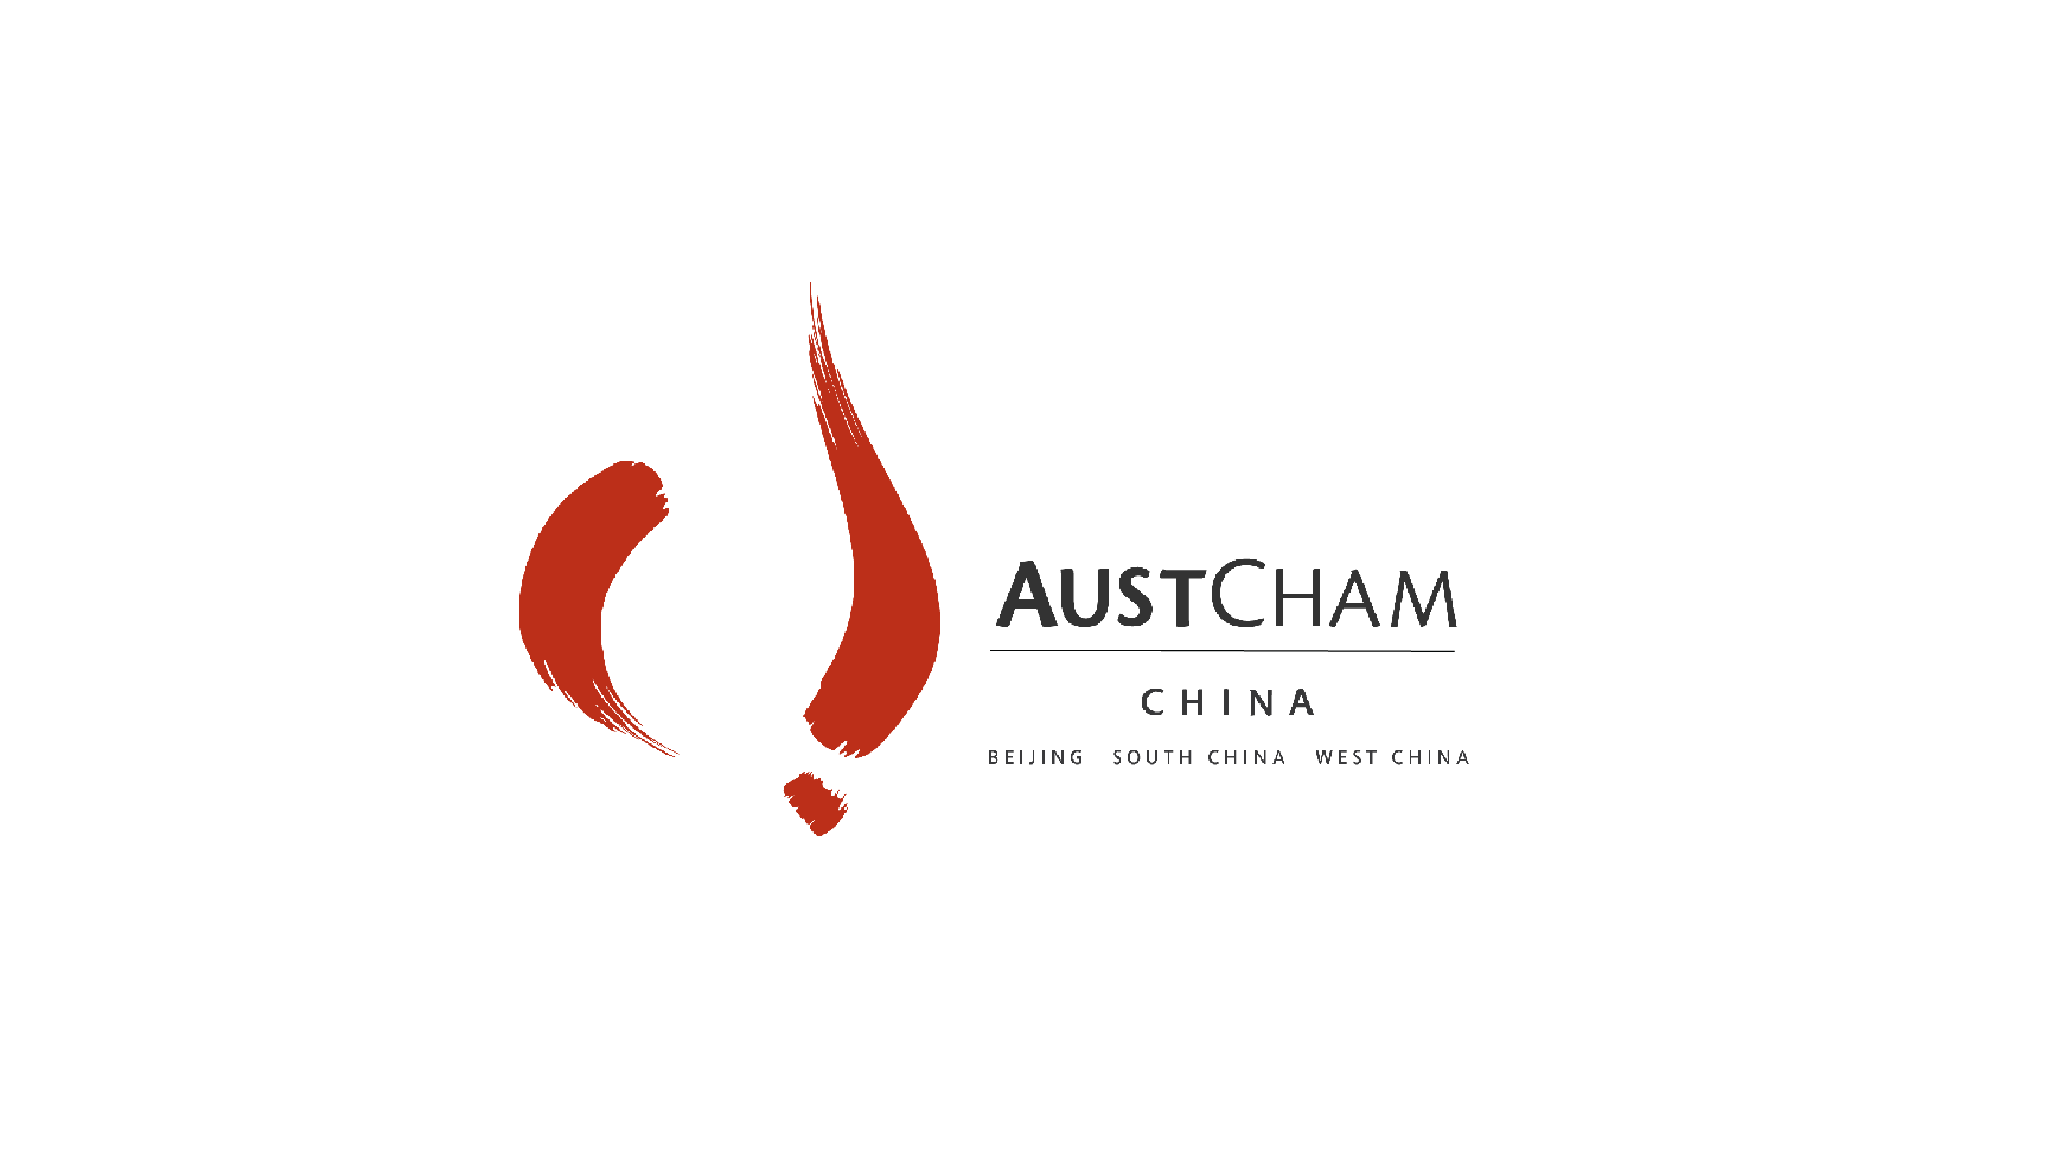 Austcham China